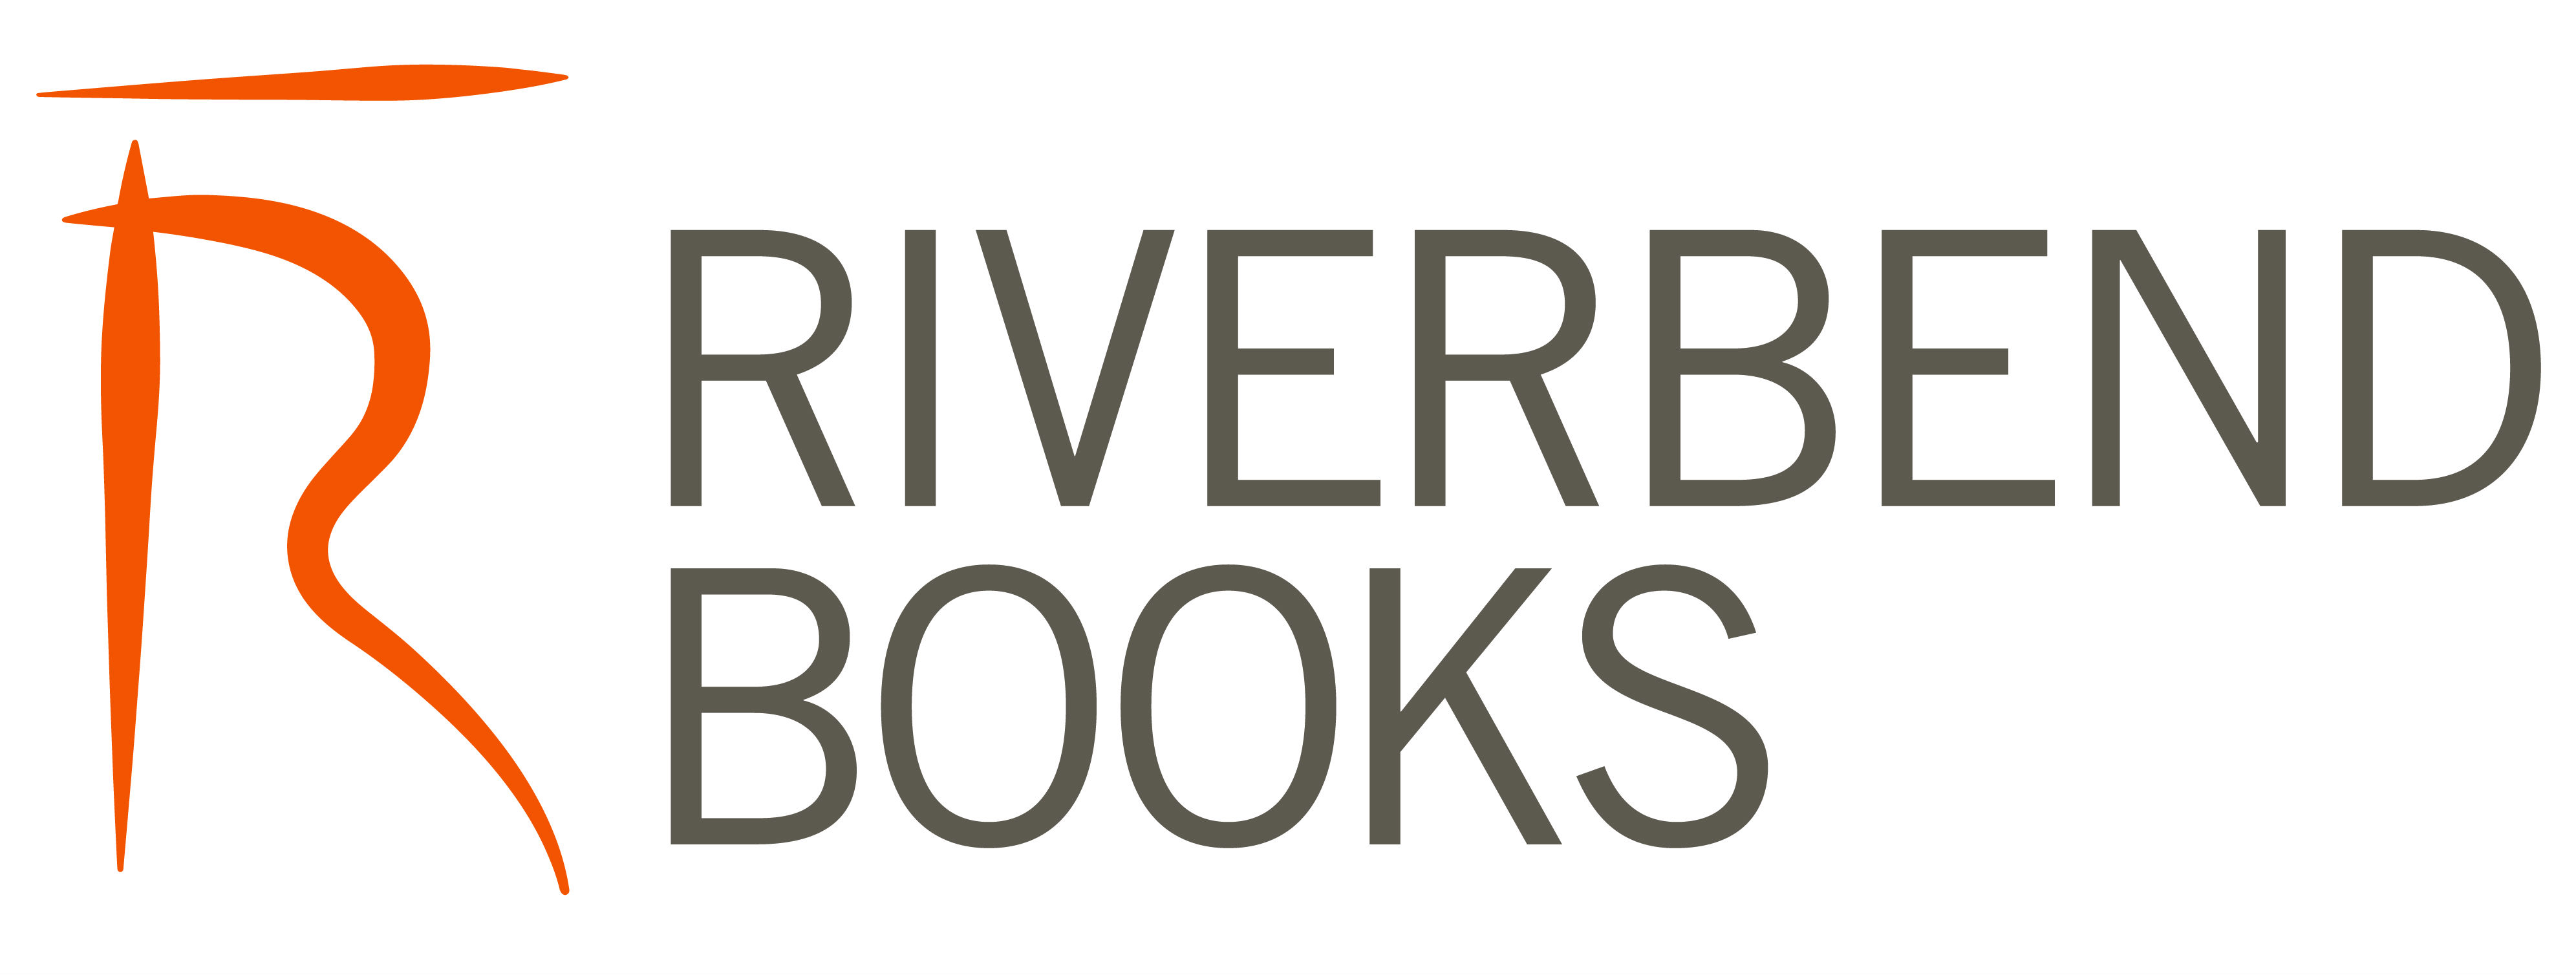 Riverbend Books logo